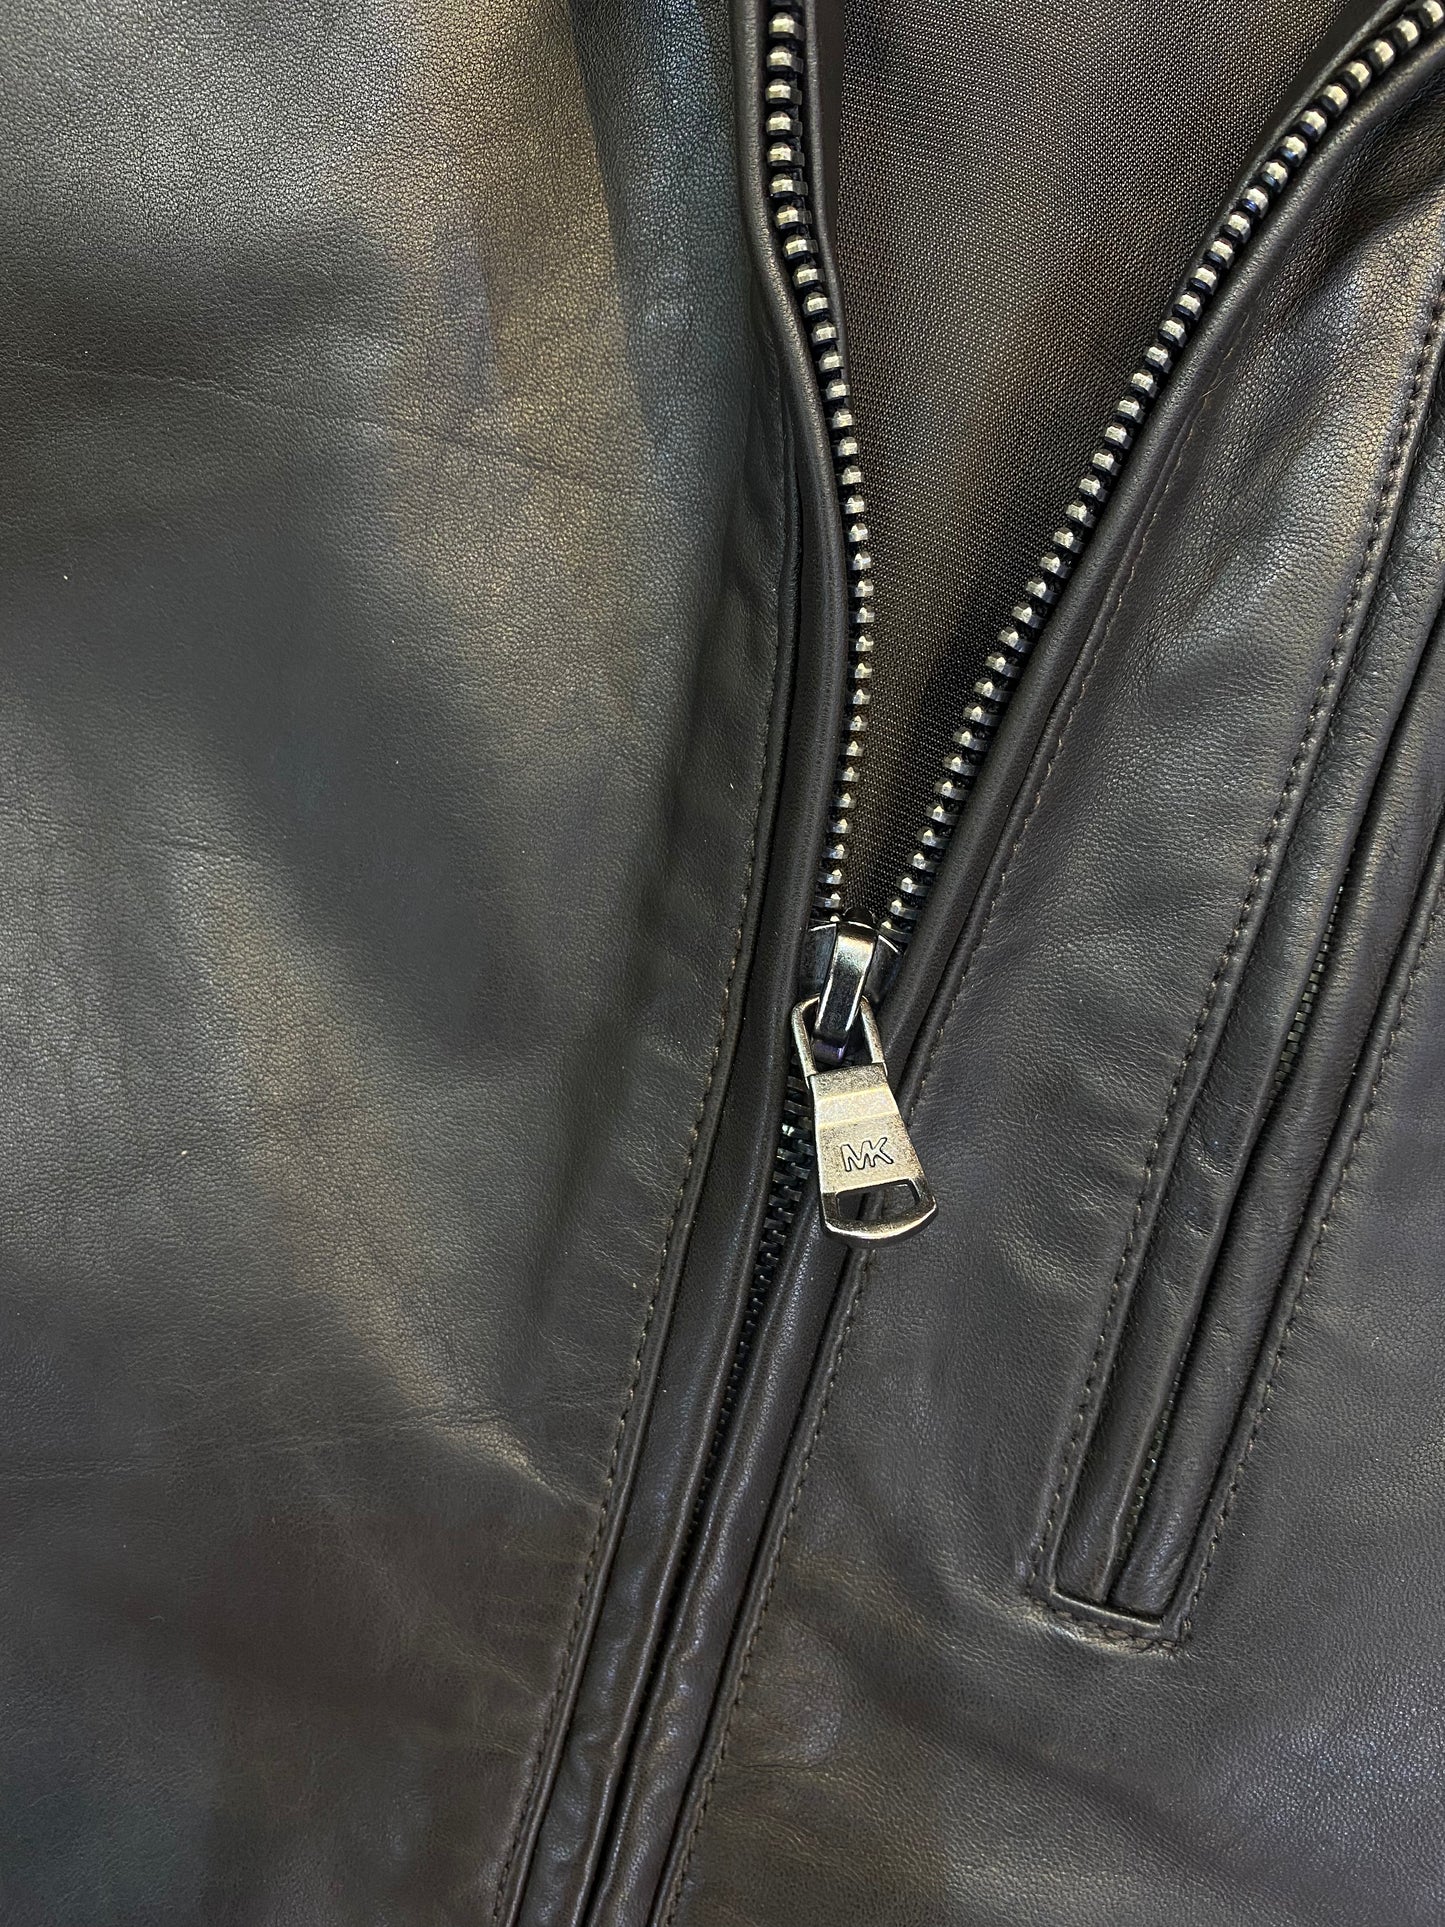 CIM KM Brown Colour Genuine Leather Surplus Men’s Jacket